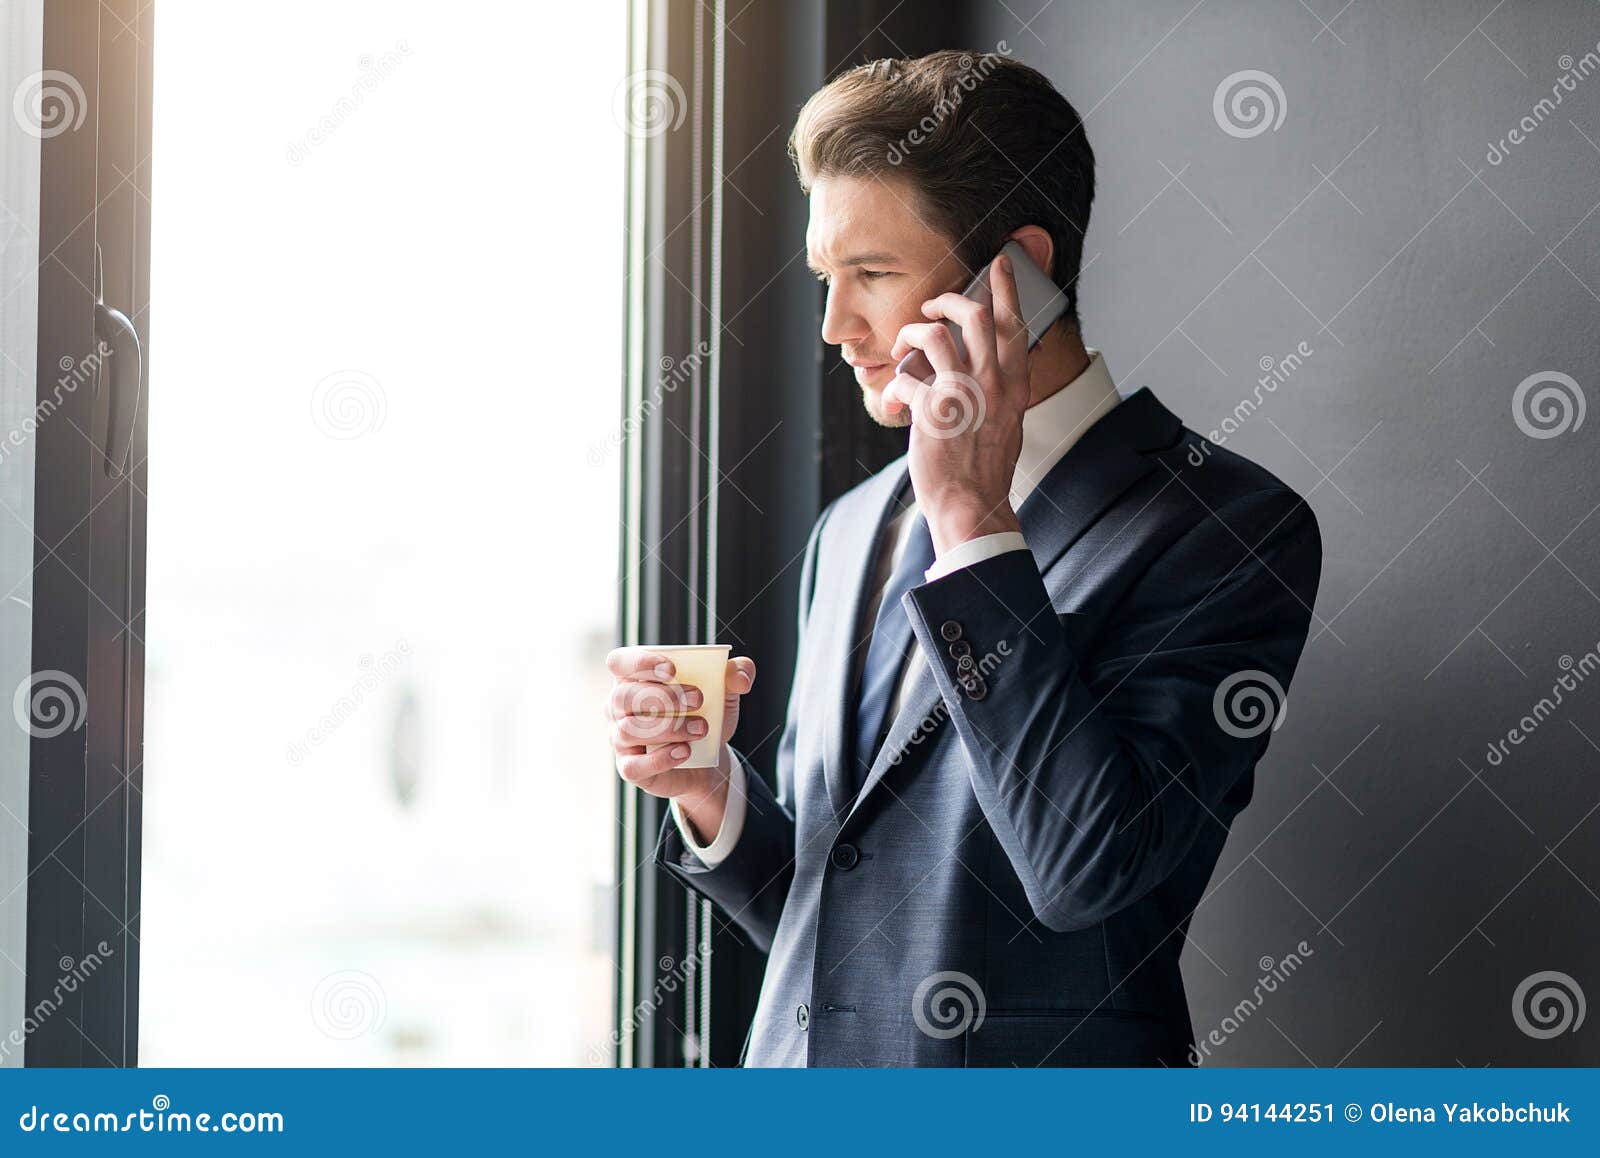 Разговор через часы. Задумчивый человек со смартфоном. Мужчина говорит по телефону. Мужчина с телефоном у окна. Мужчина возле окна.